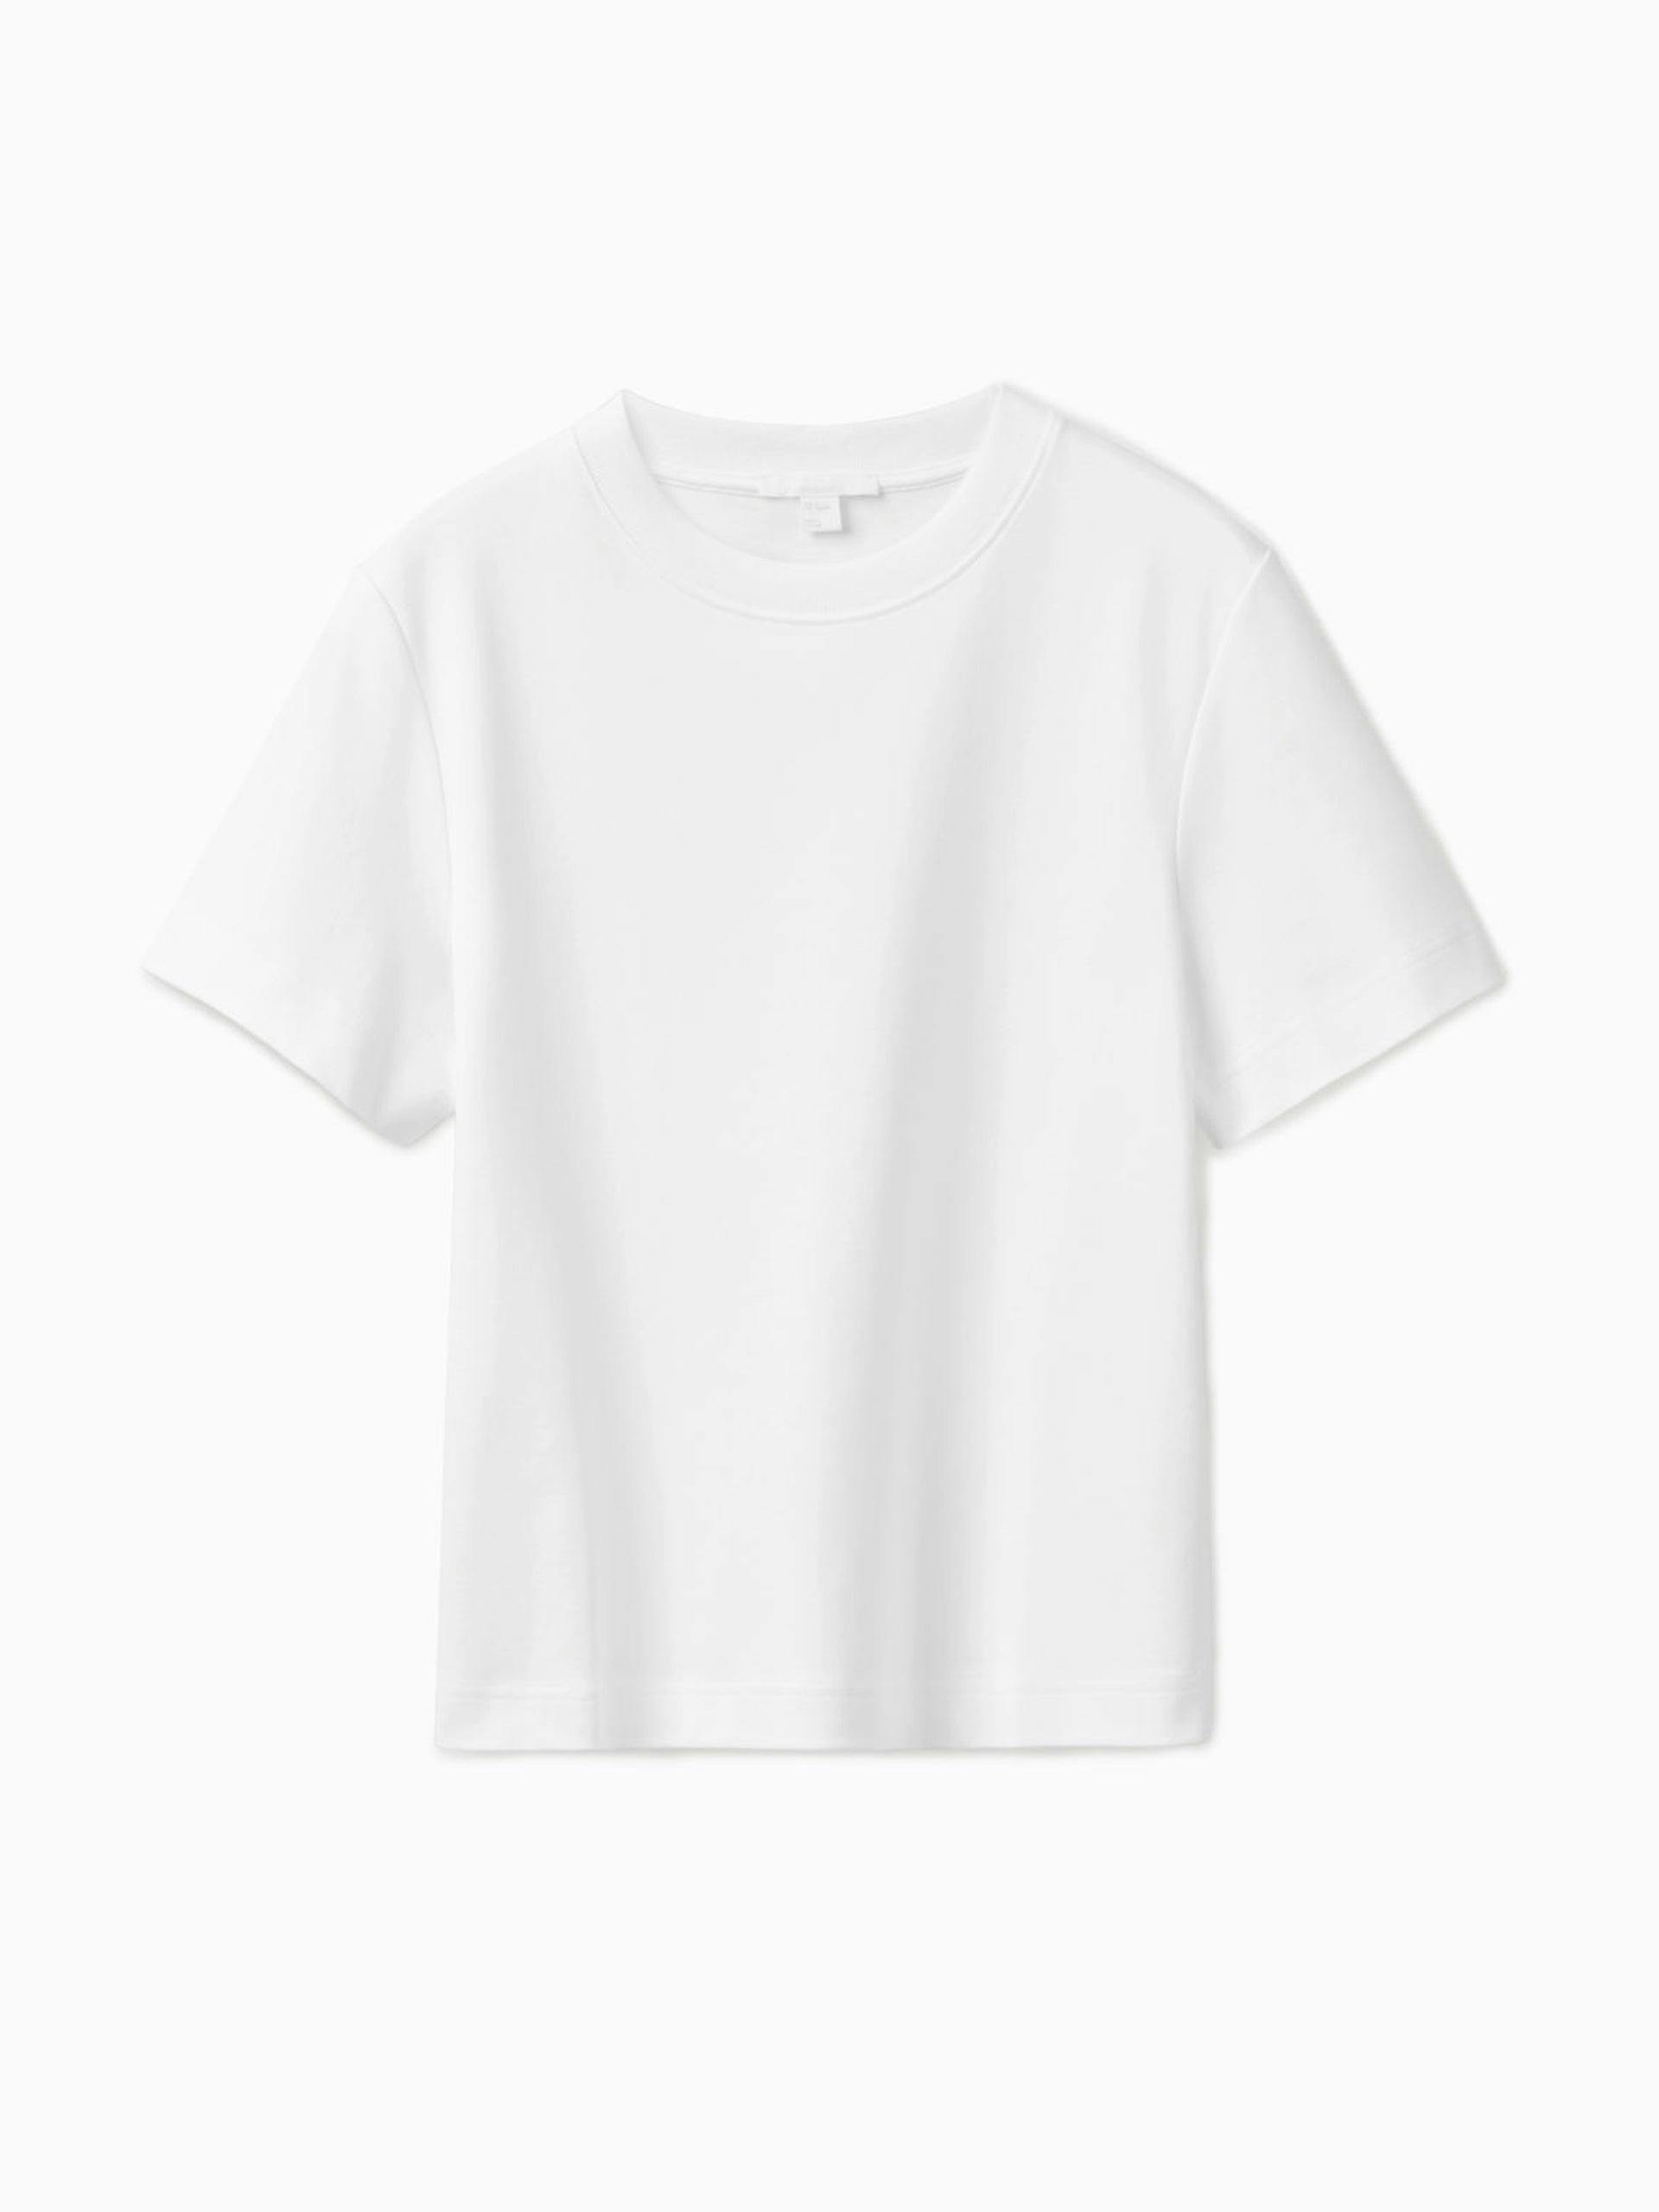 Heavyweight cotton t-shirt